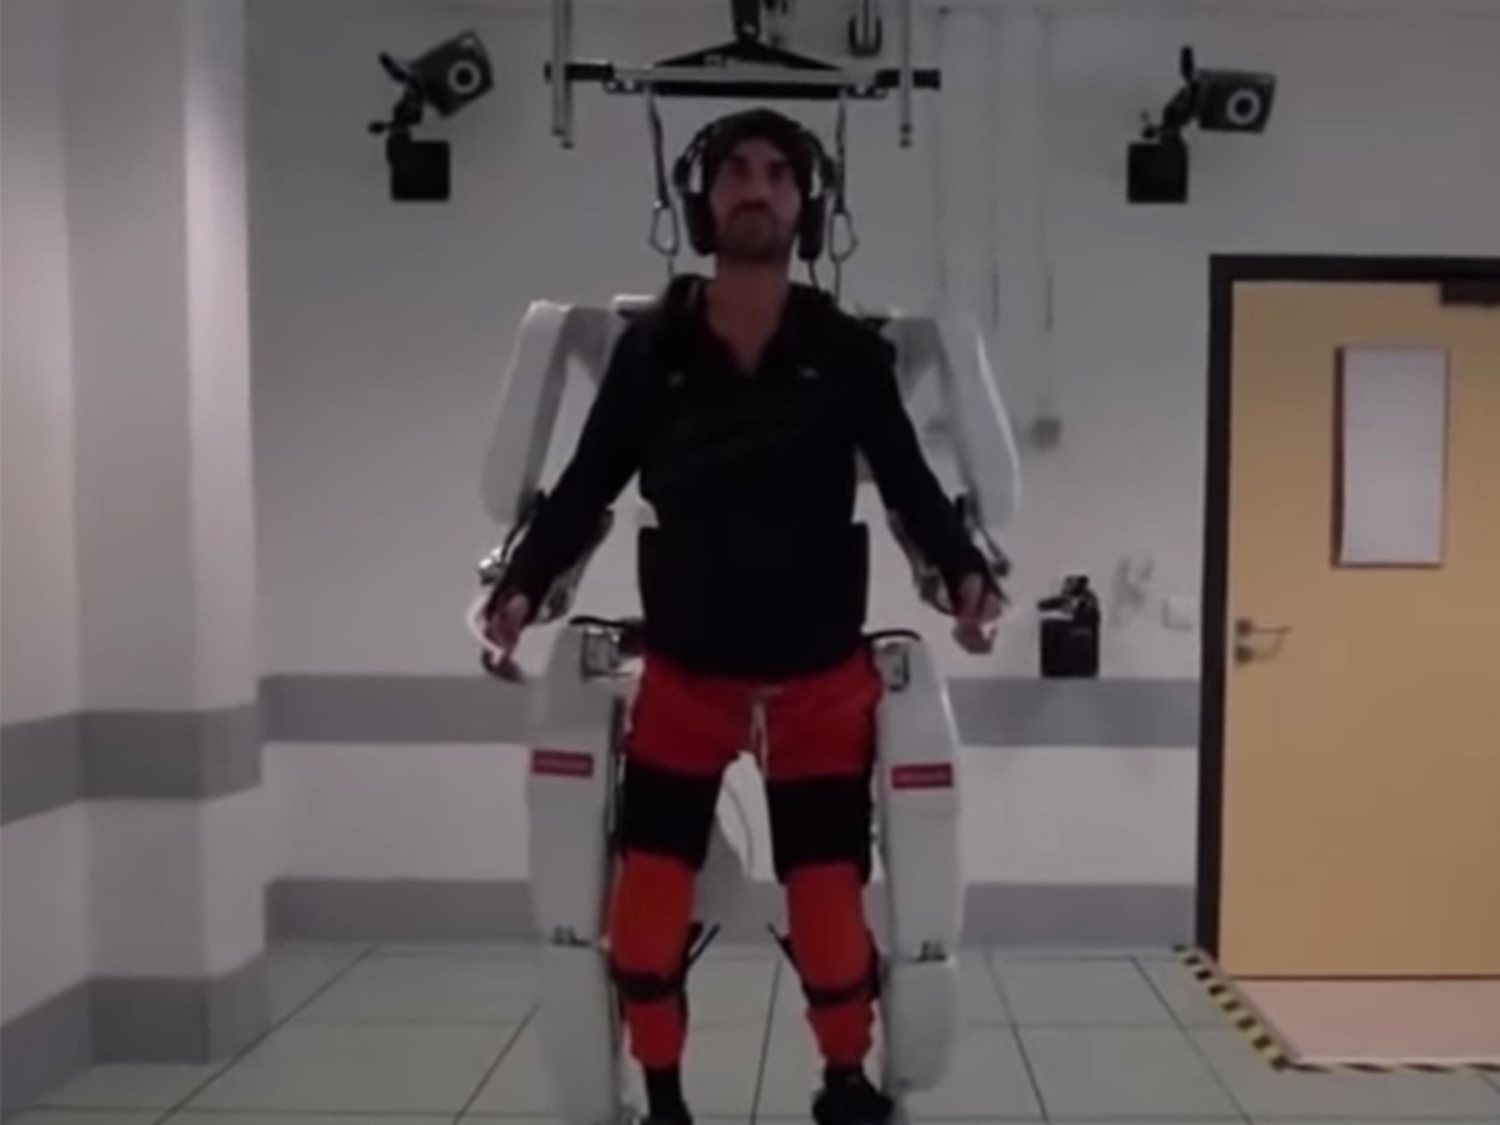 Un paciente tretapléjico vuelve a mover su cuerpo gracias a un exoesqueleto dirigido mentalmente